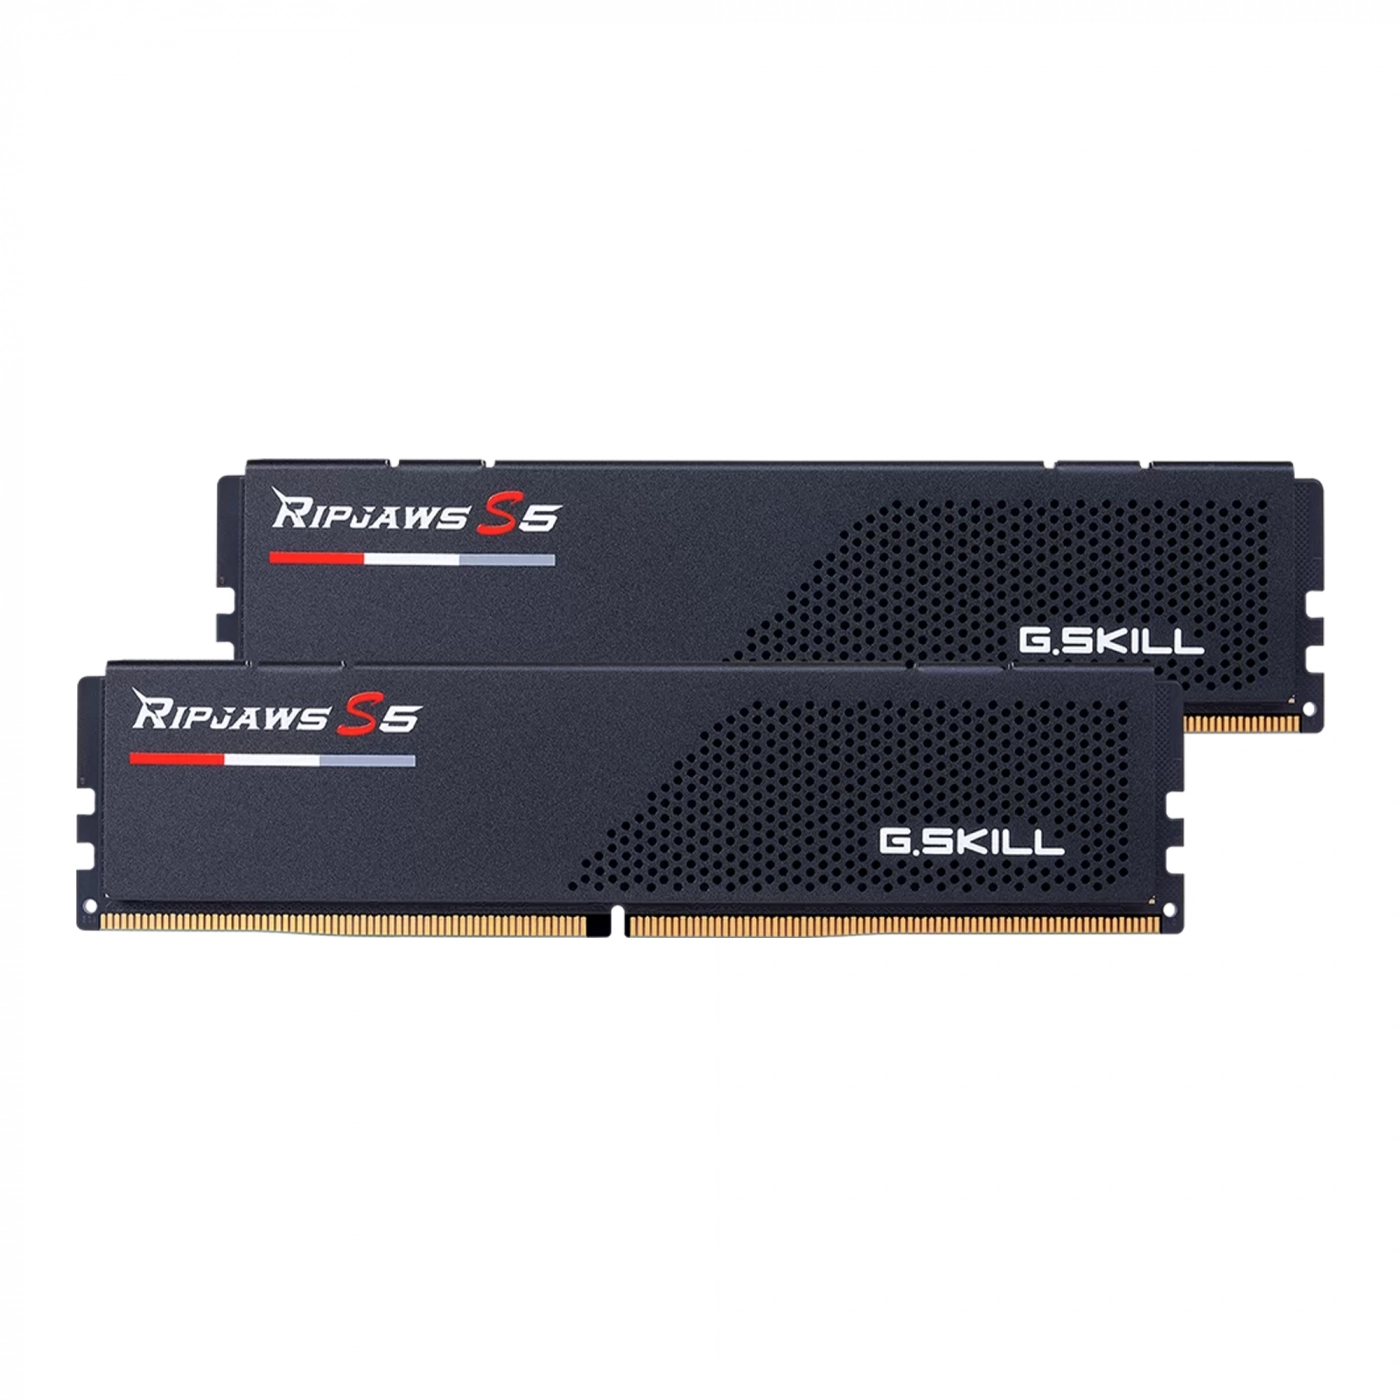 Купить Модуль памяти G.Skill Ripjaws S5 Black DDR5-6400 32GB (2x16GB) CL32-39-39-102 1.4V - фото 2